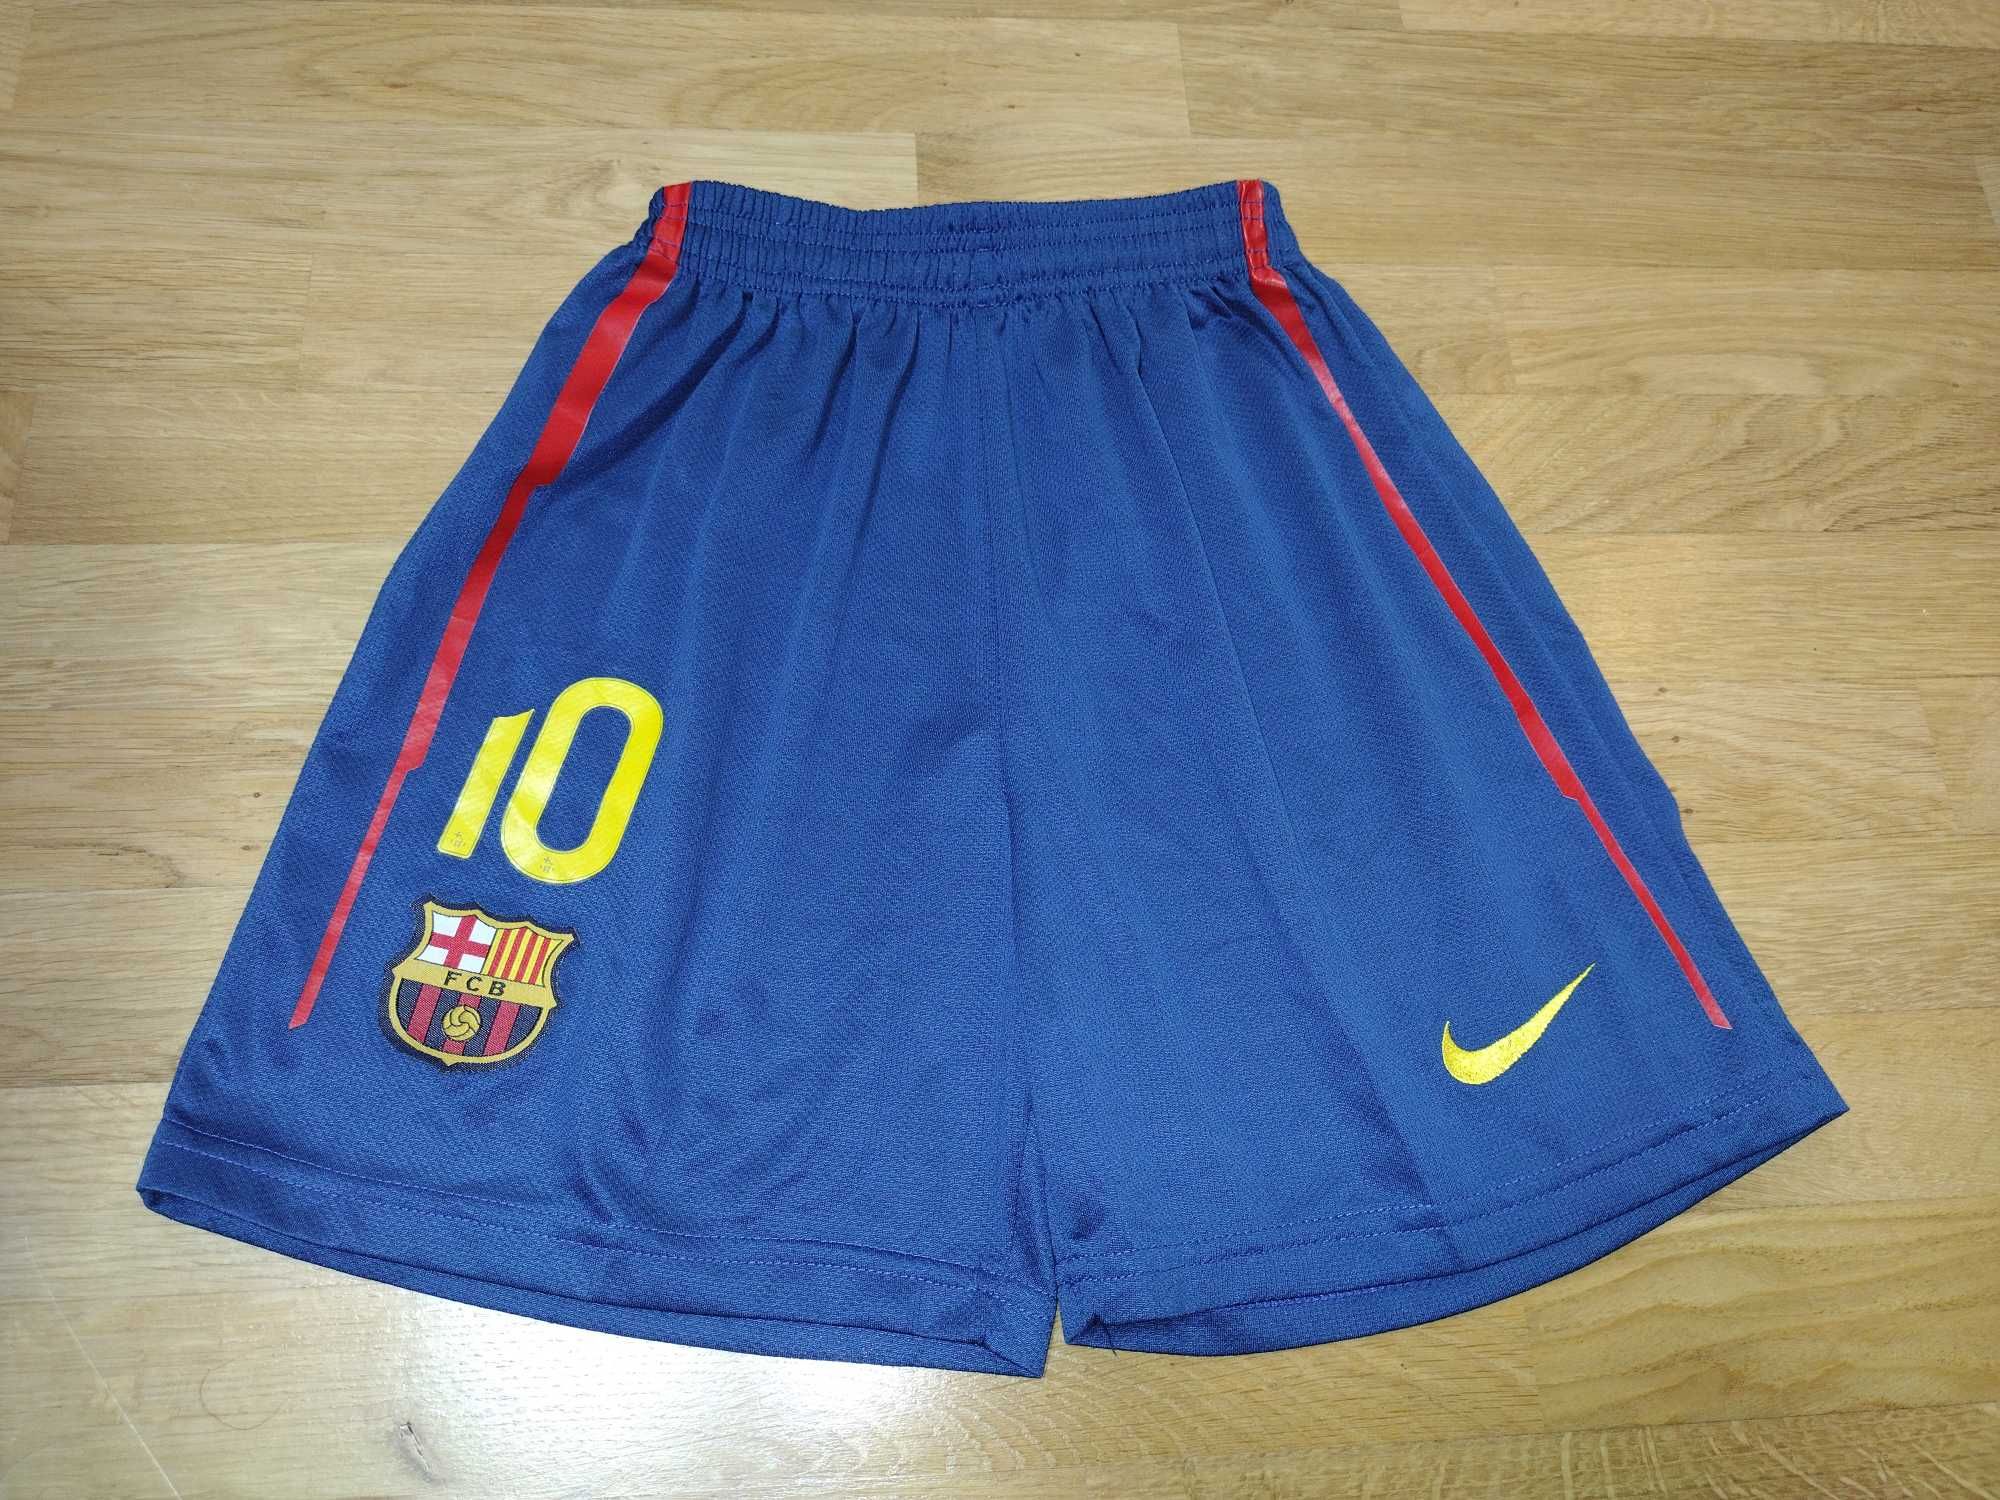 Spodenki chłopięce Nike FC Barcelona 10 (Messi) rozmiar 152